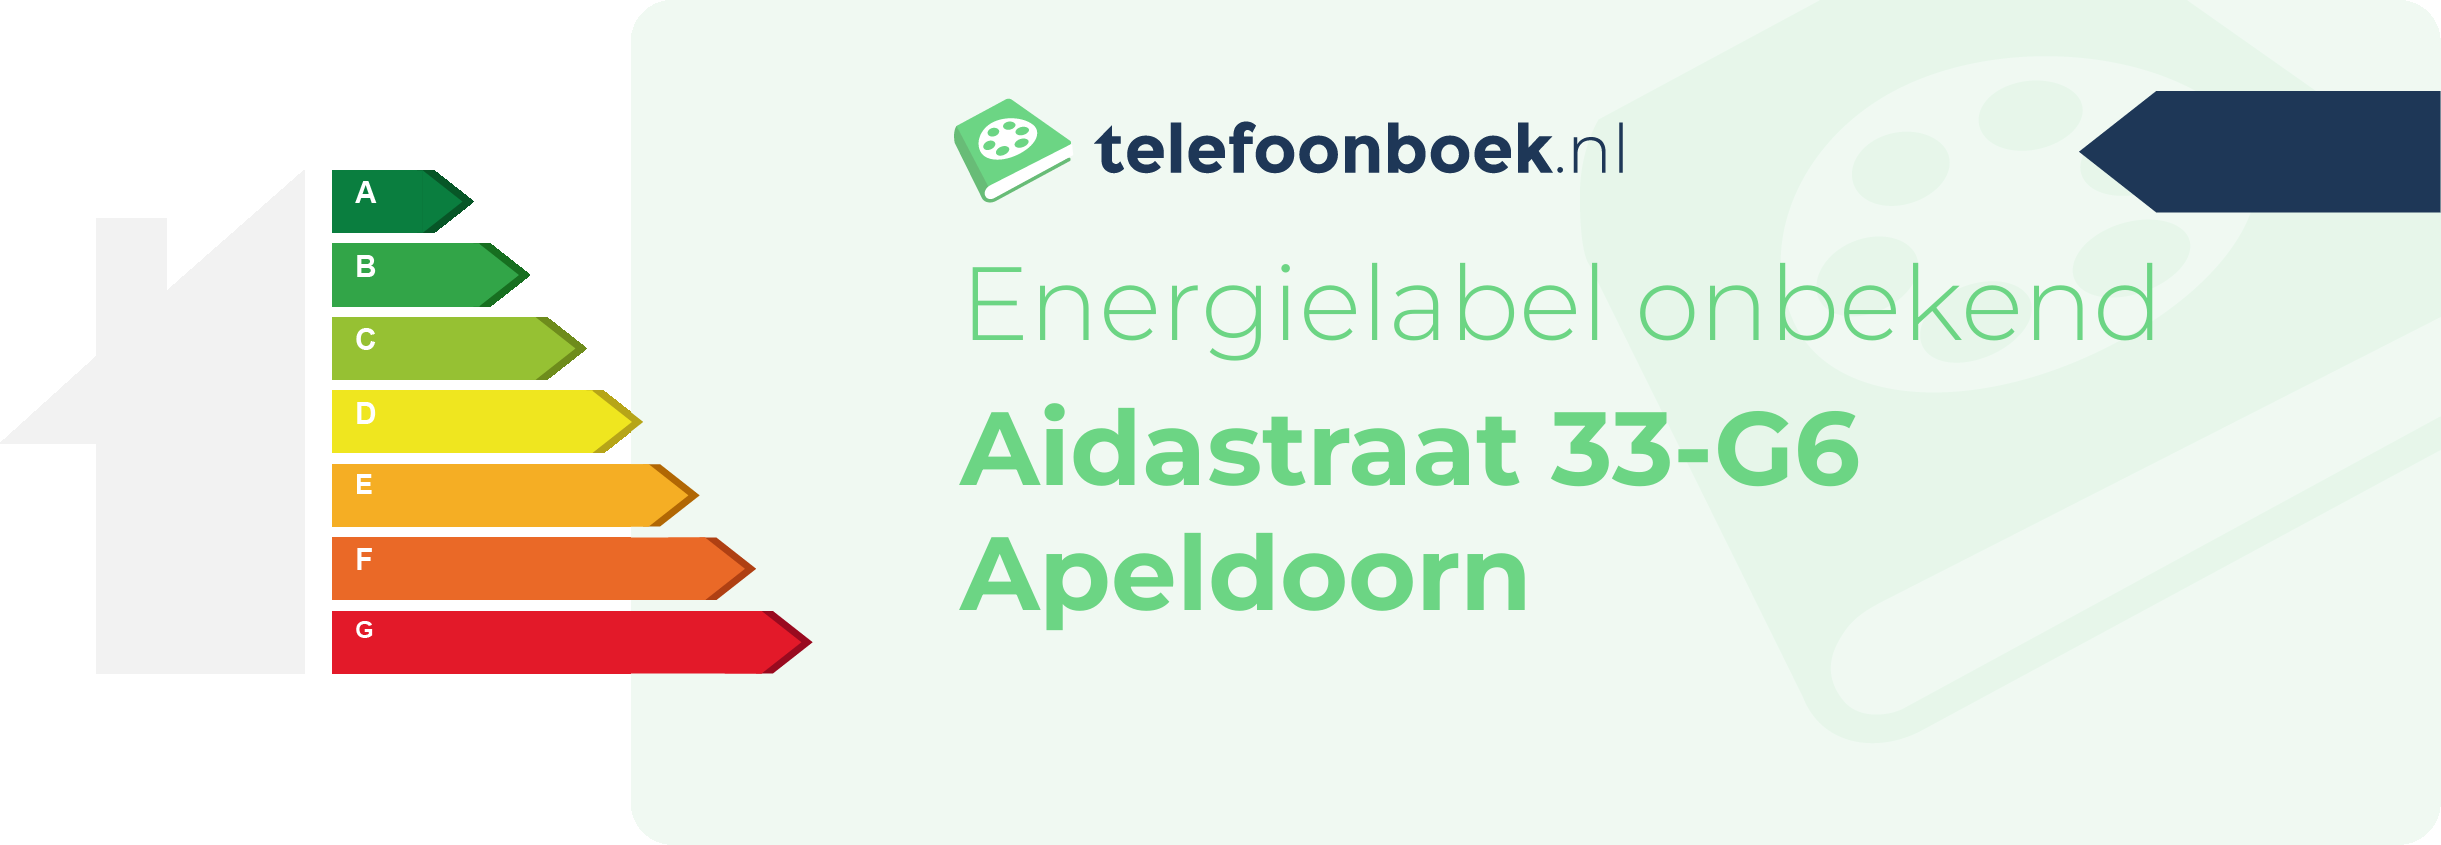 Energielabel Aidastraat 33-G6 Apeldoorn